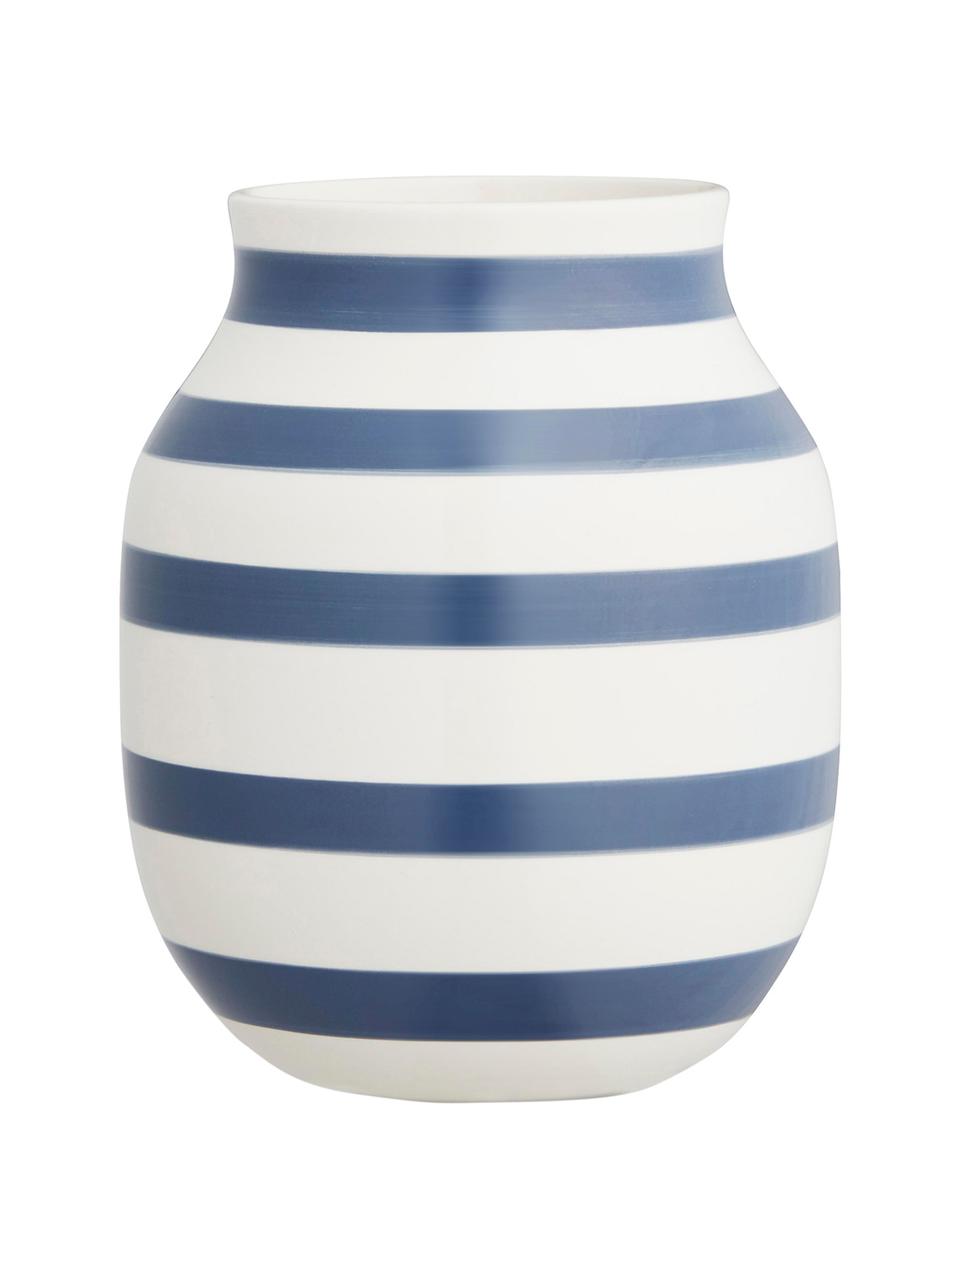 Średni ręcznie wykonany wazon Omaggio, Ceramika, Biały, stalowy niebieski, Ø 17 x W 20 cm